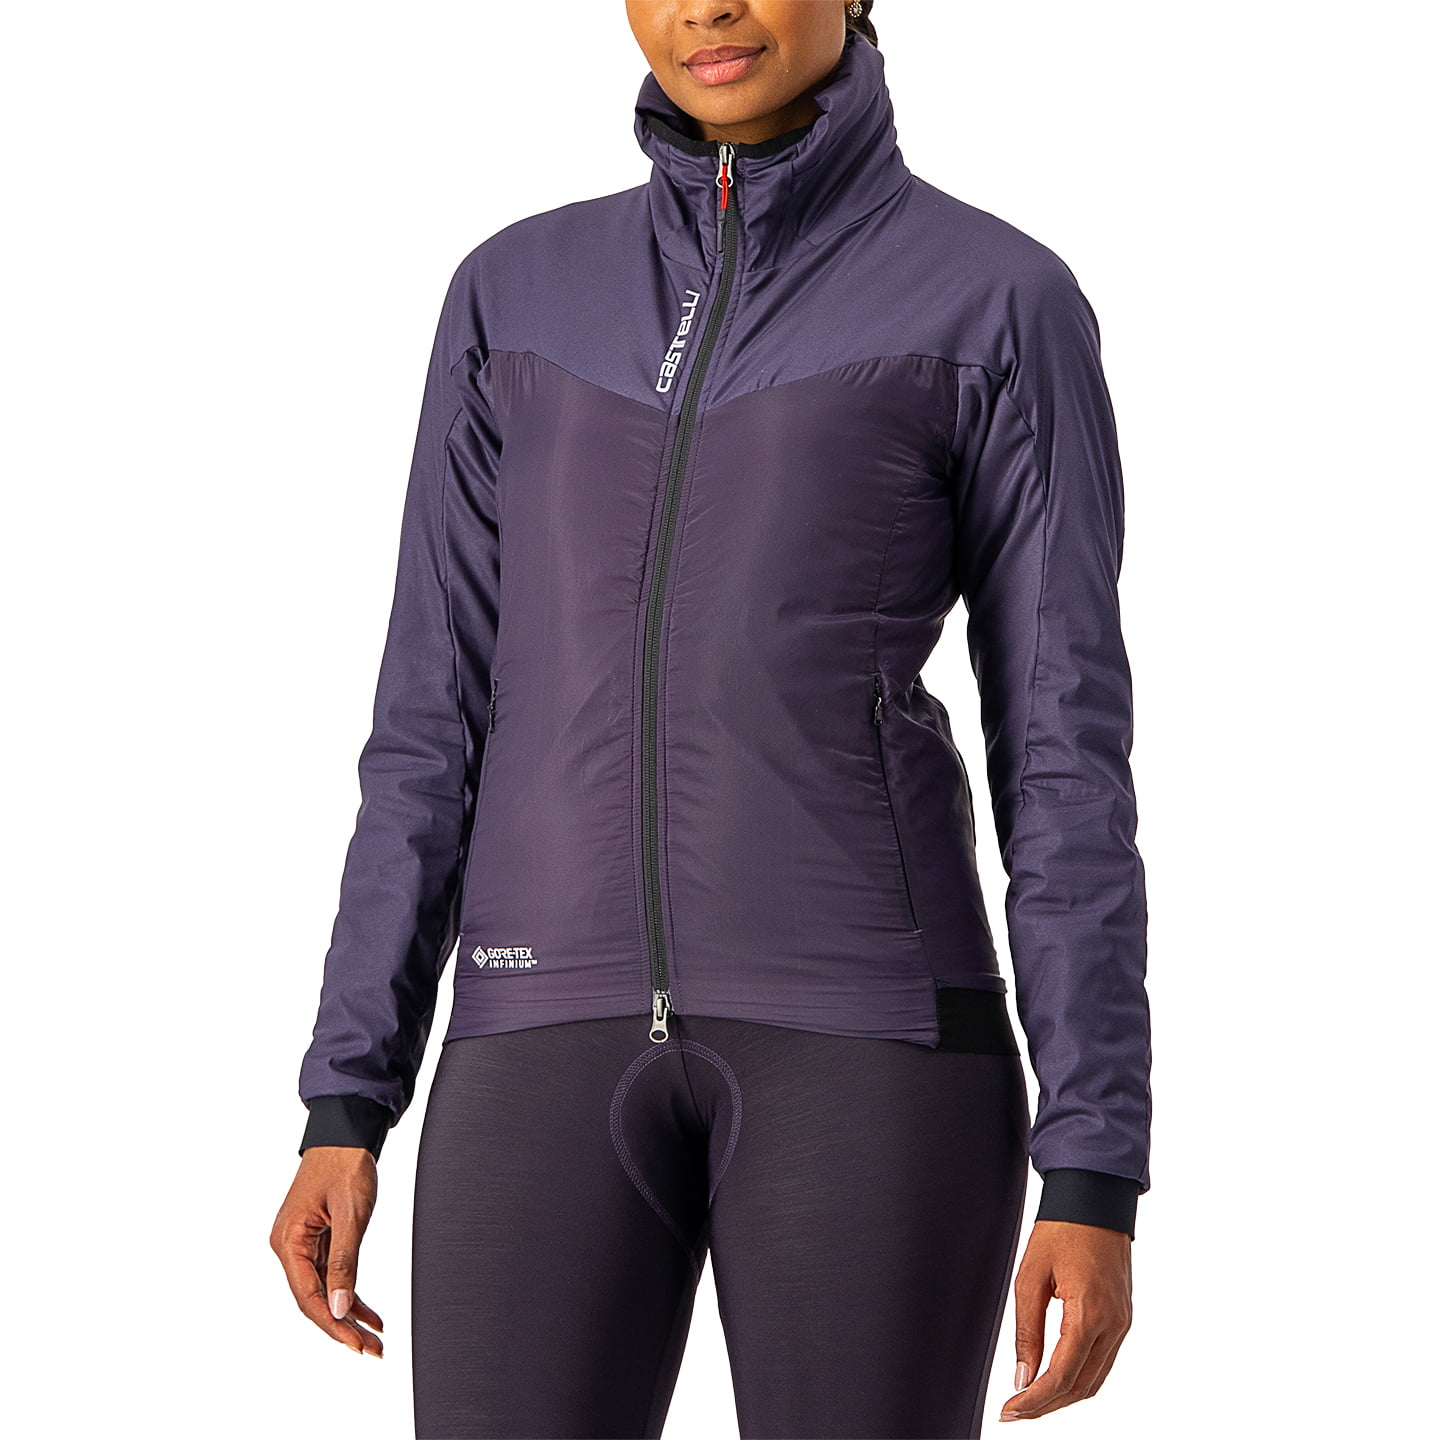 Women’s winter jacket Fly Thermal Women’s Thermal Jacket, size S, Winter jacket, Cycle clothing